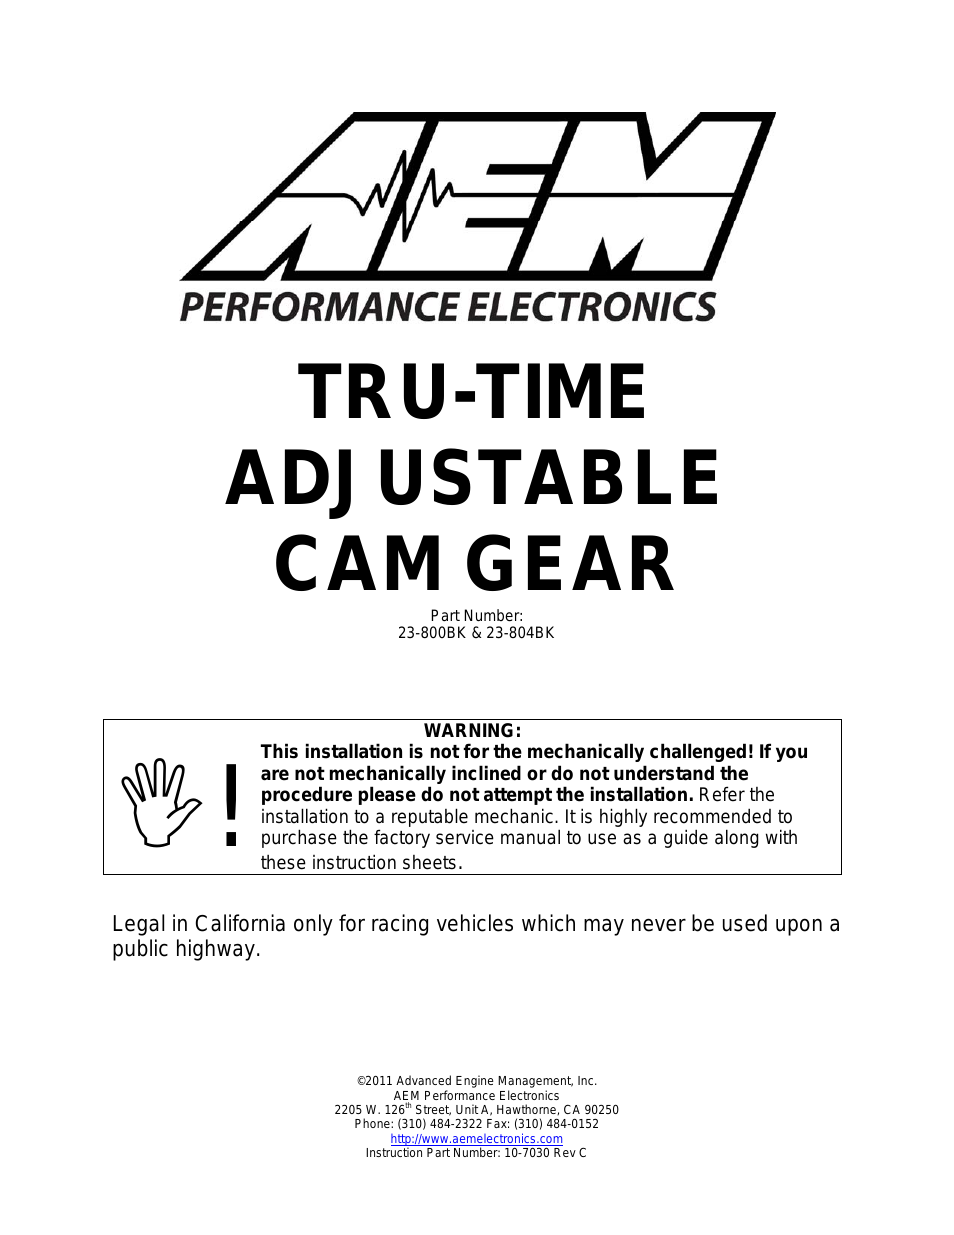 23-804BK Tru-Time Adjustable Cam Gear